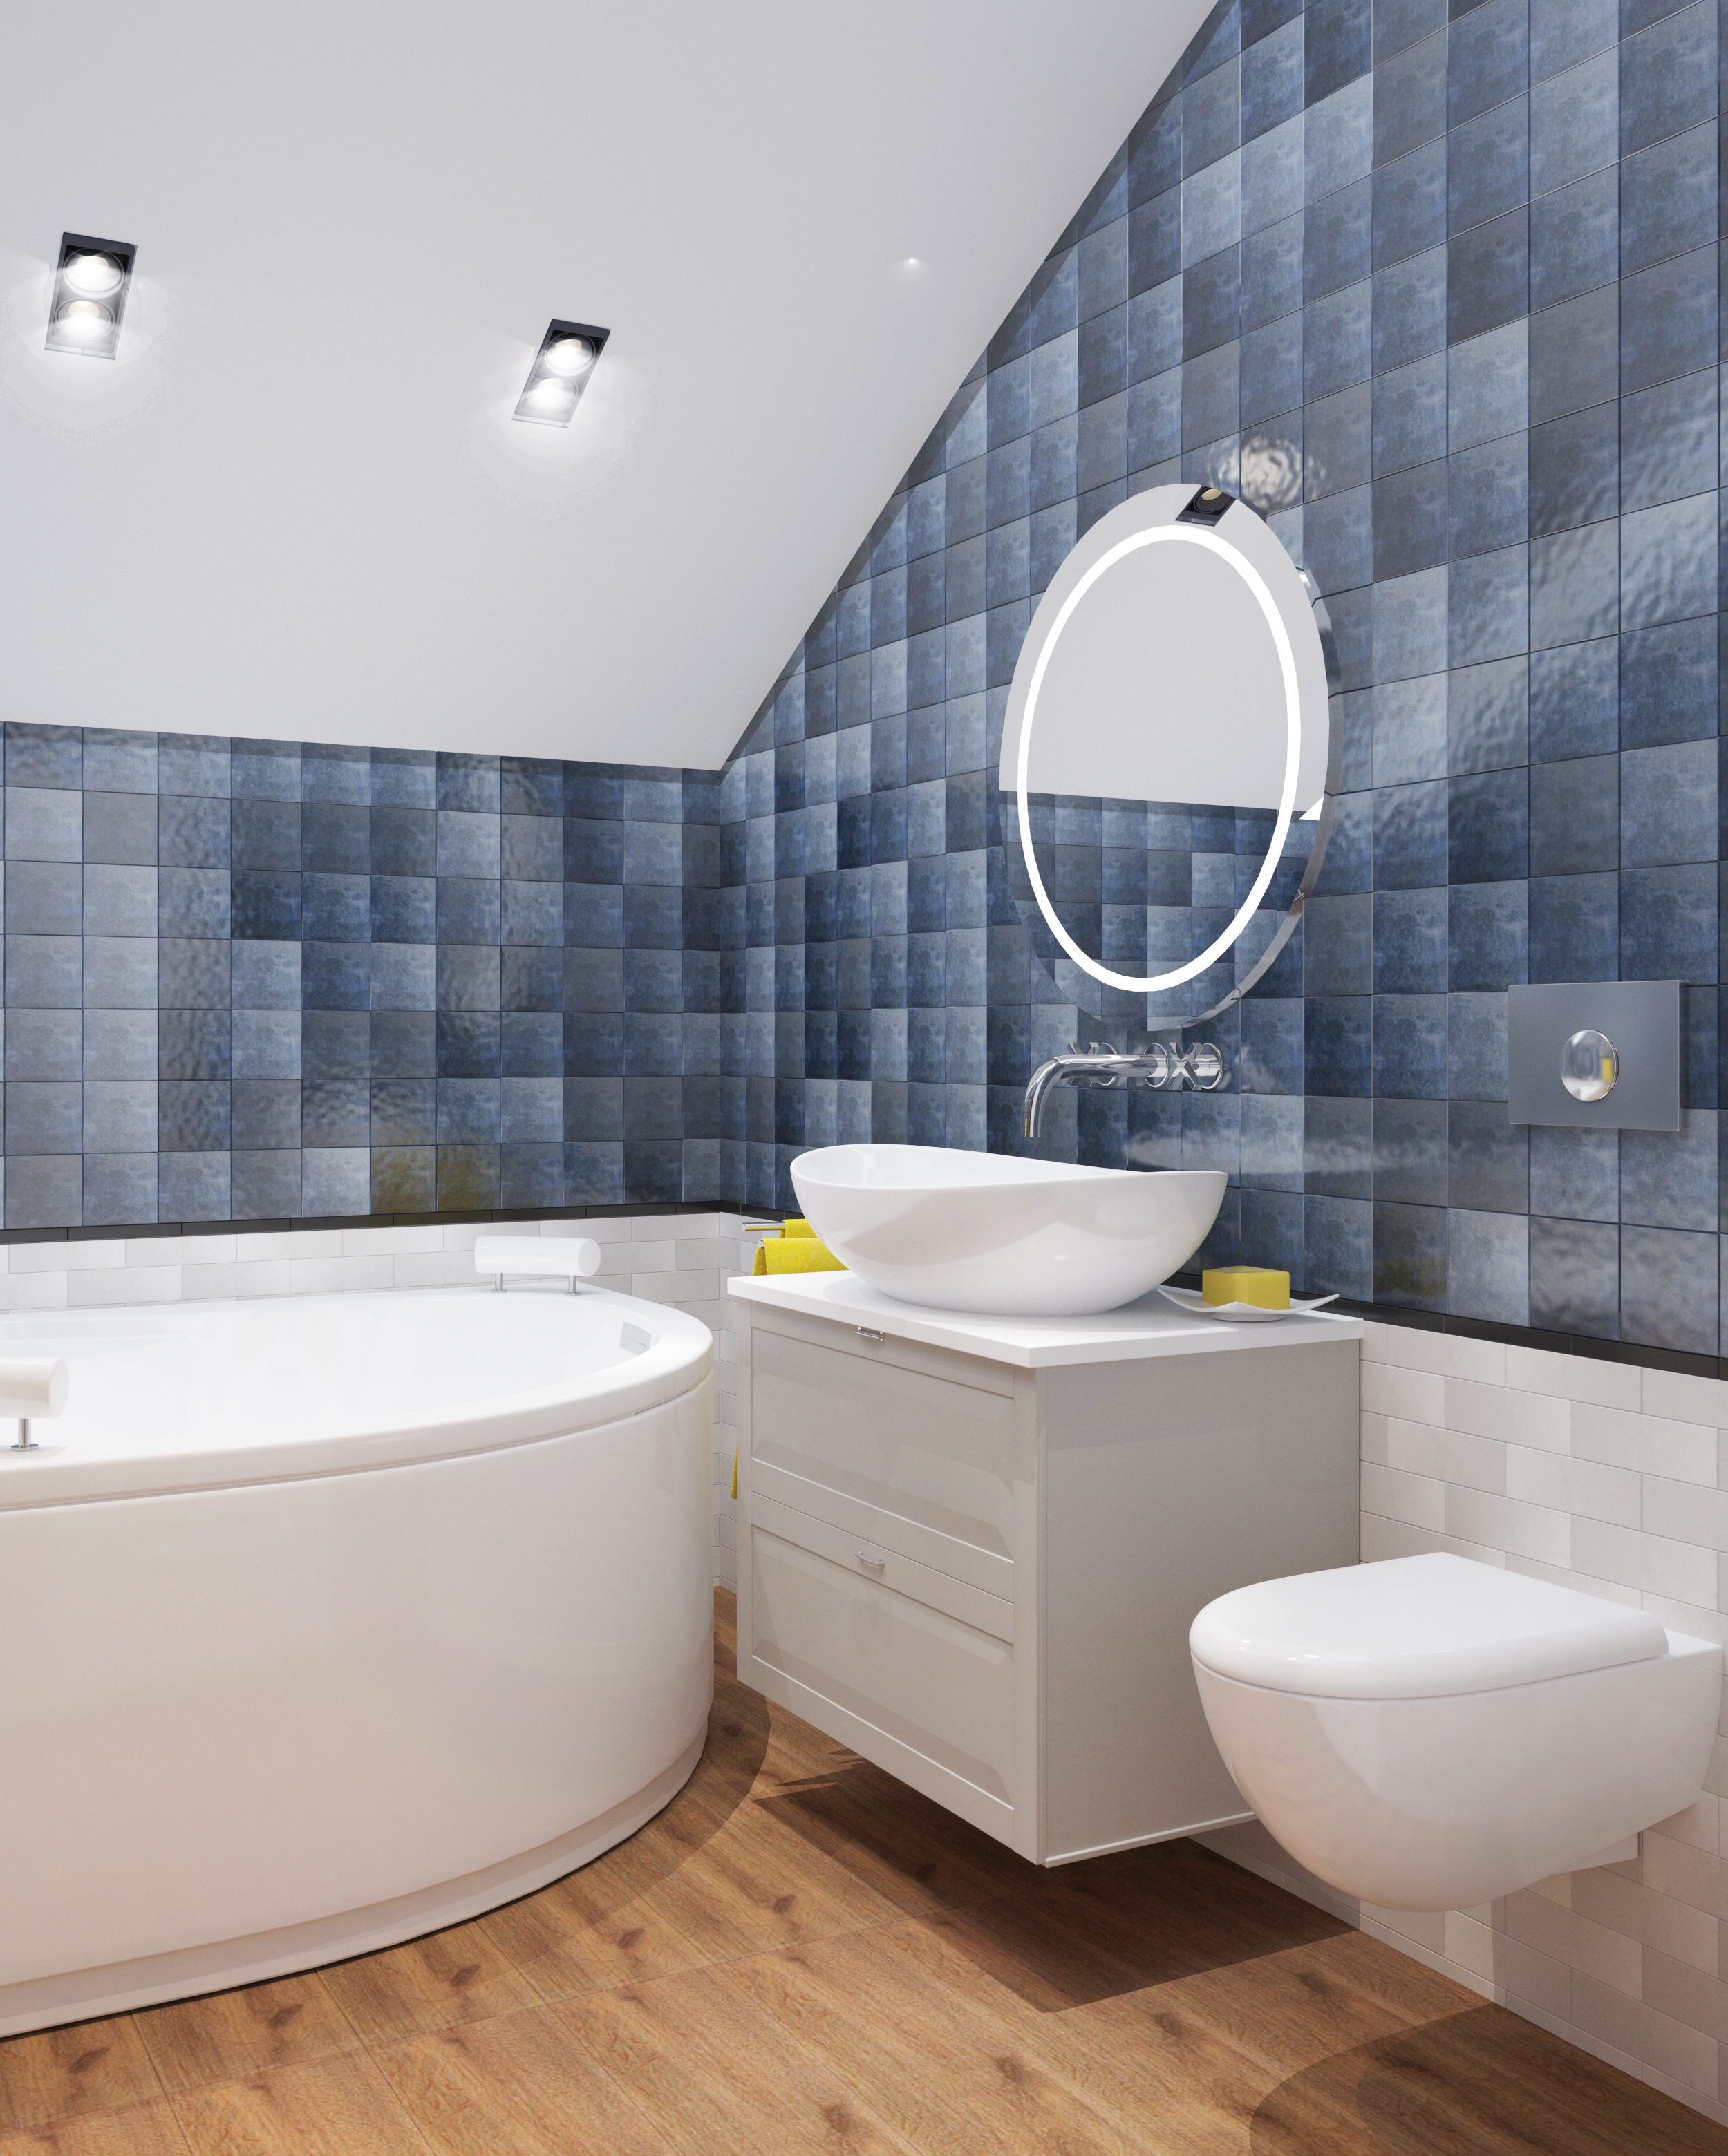 Фото № 5: Современный дизайн ванной комнаты